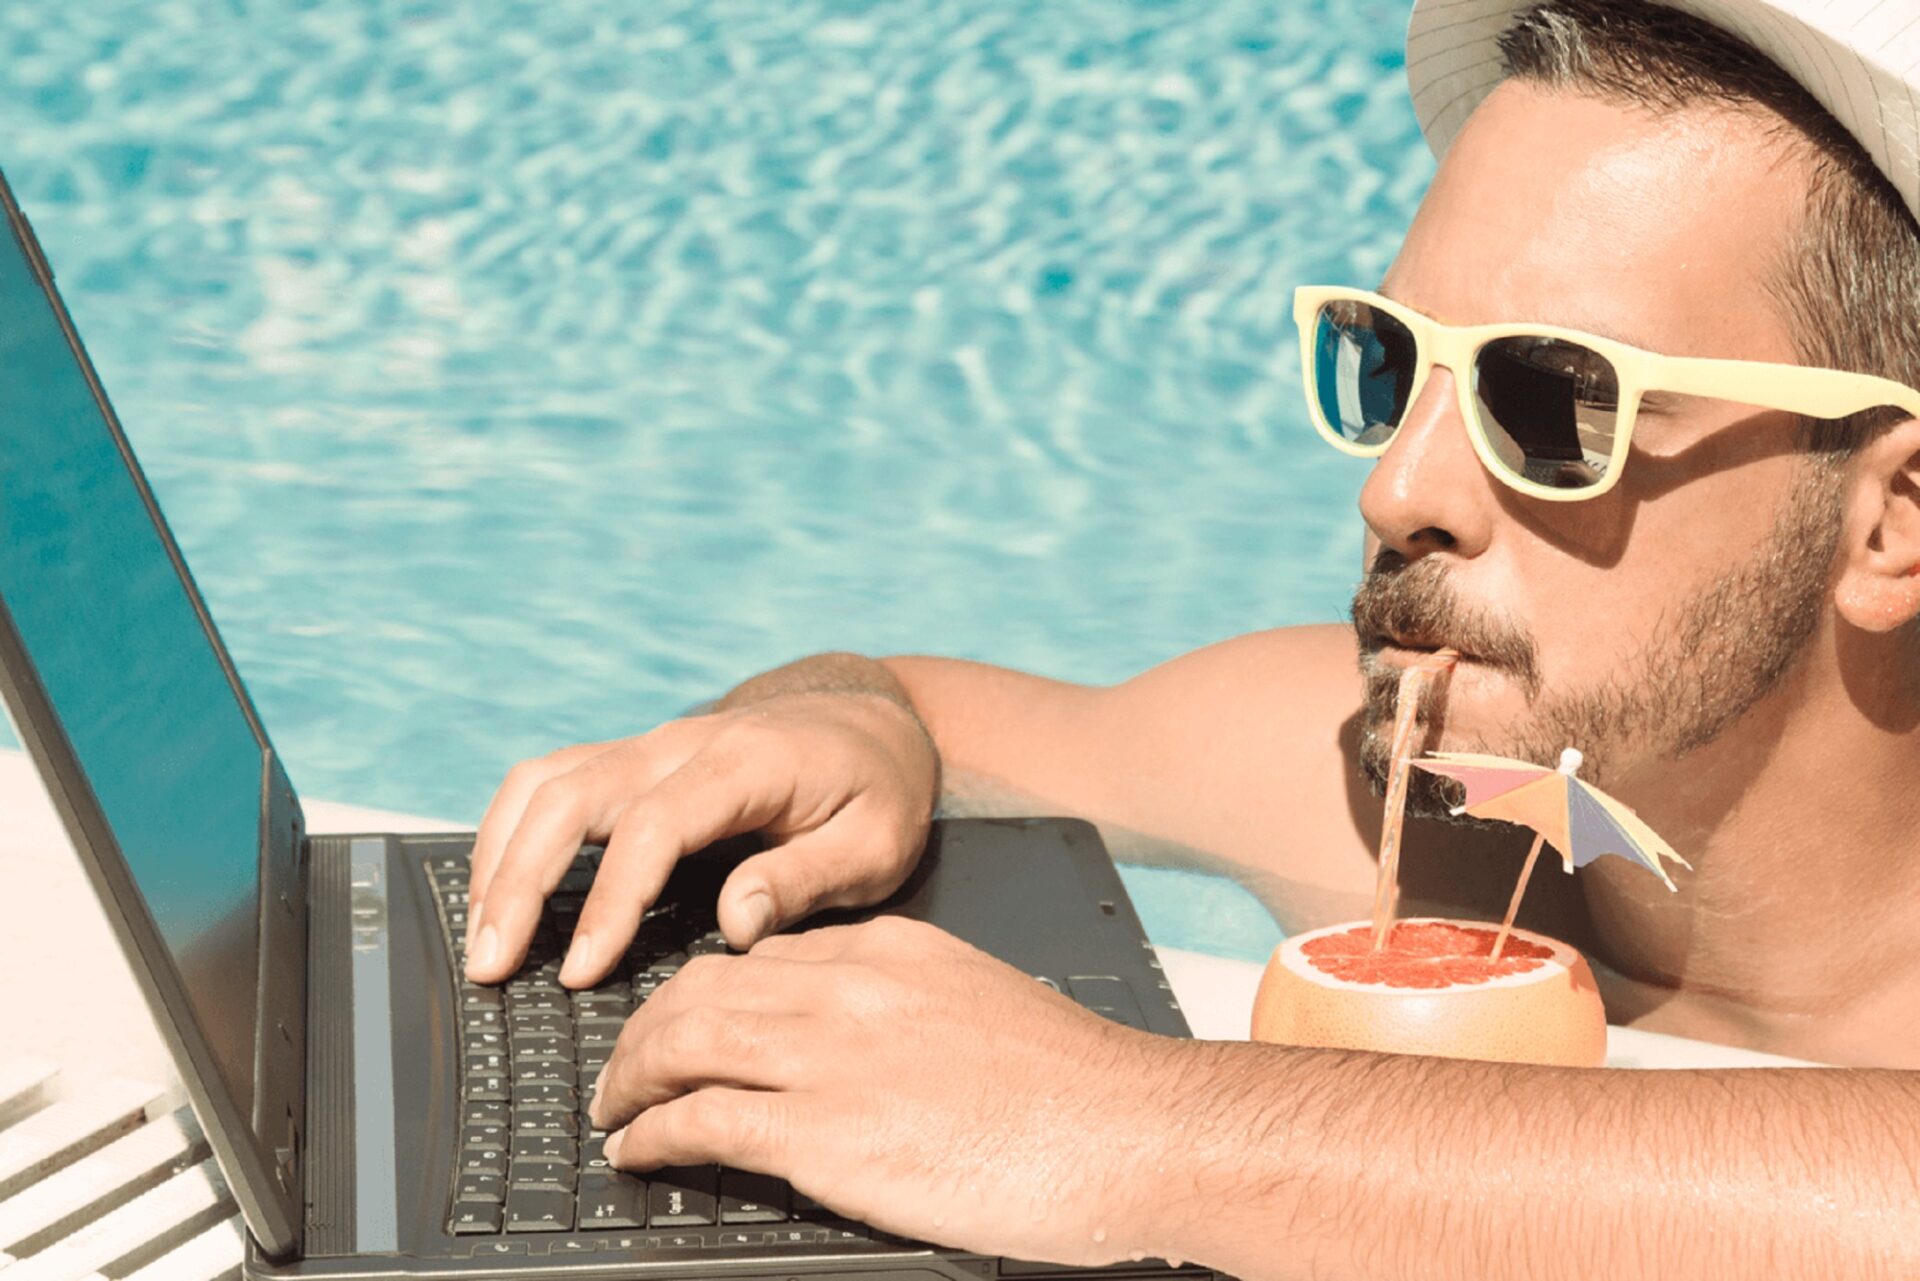 Удаленный фрилансер. Бизнесмен на отдыхе. Мужчина с ноутбуком на море. Человек с ноутбуком на пляже. Бизнесмен на пляже с ноутбуком.